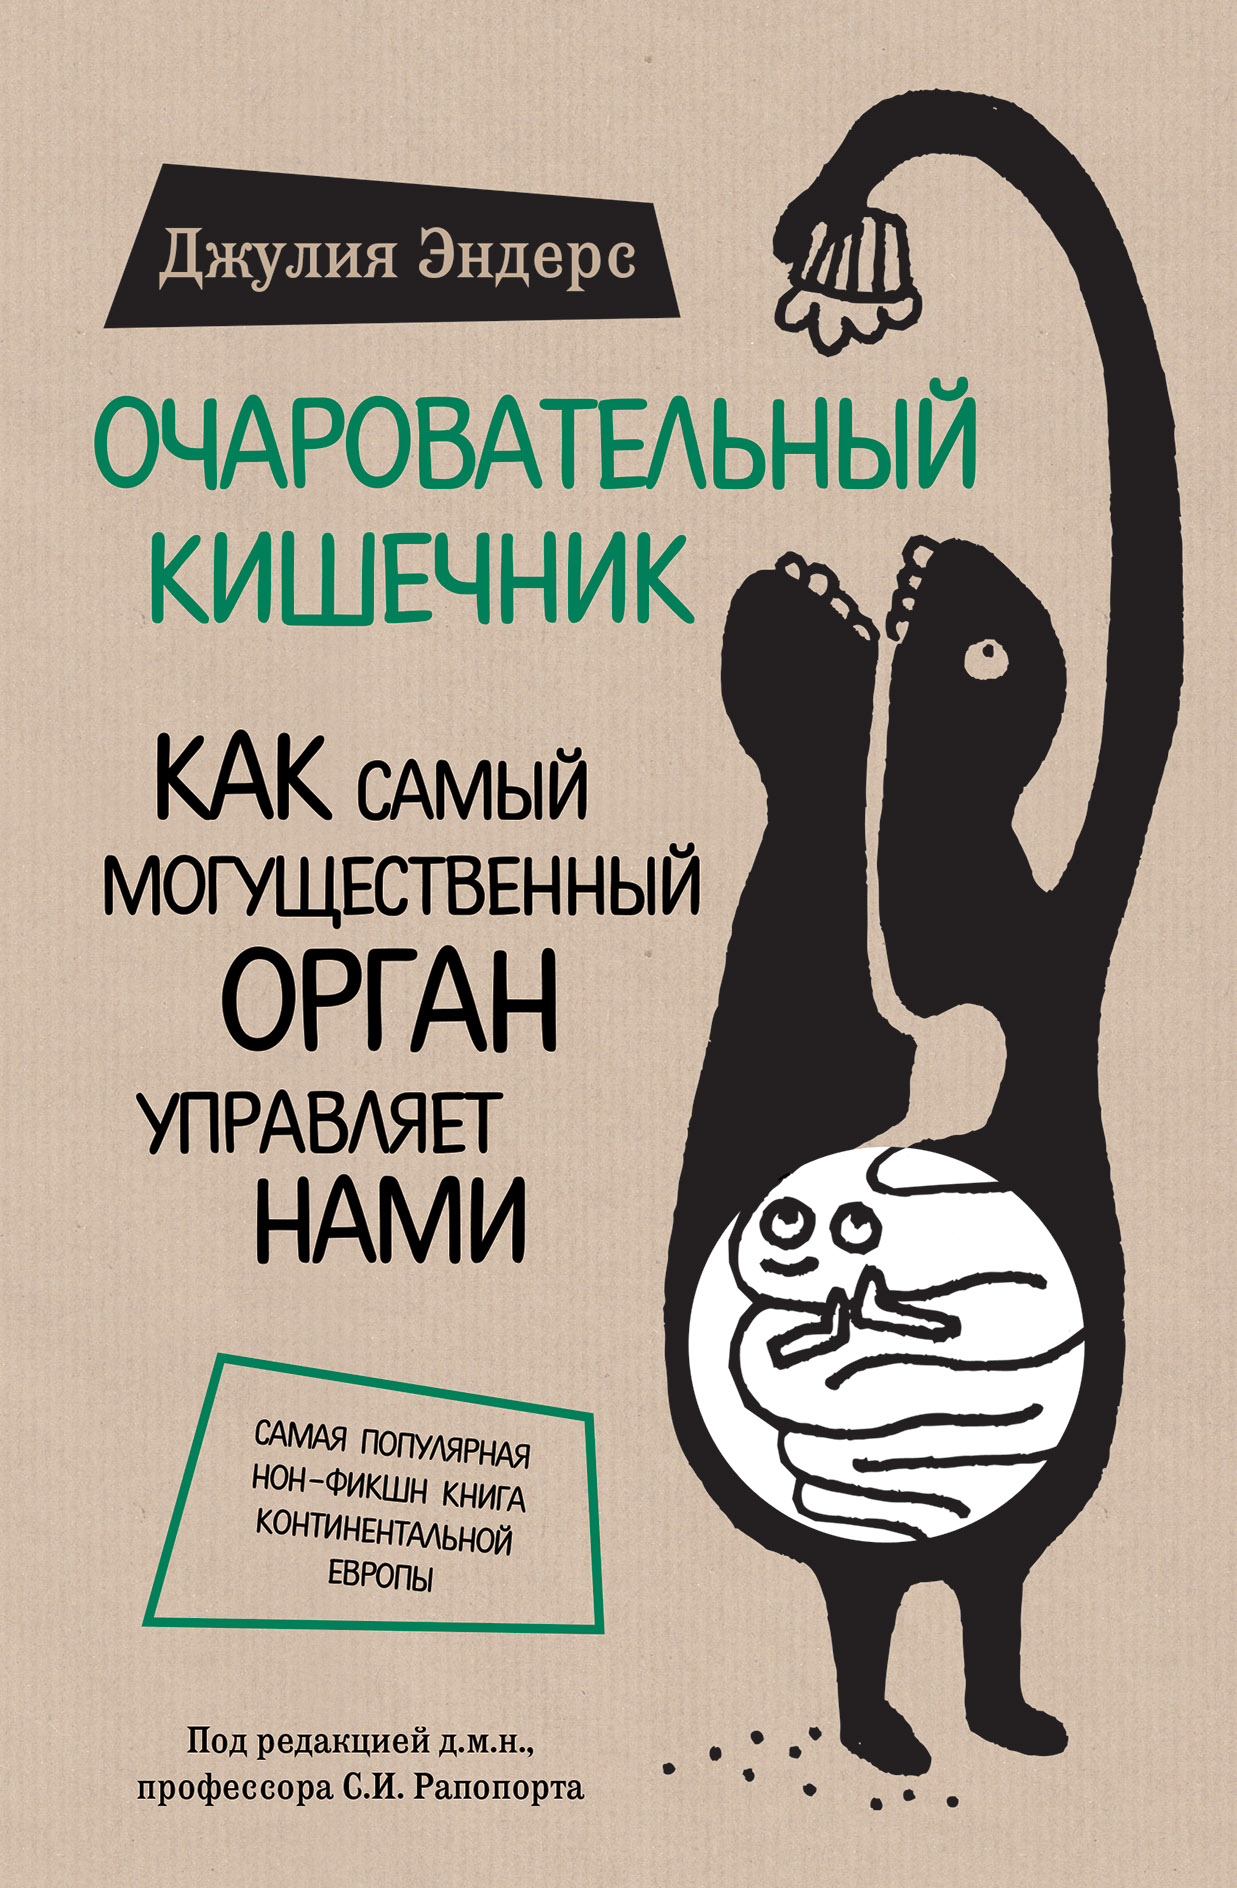 Скачать книги бесплатно на украинских сайтах